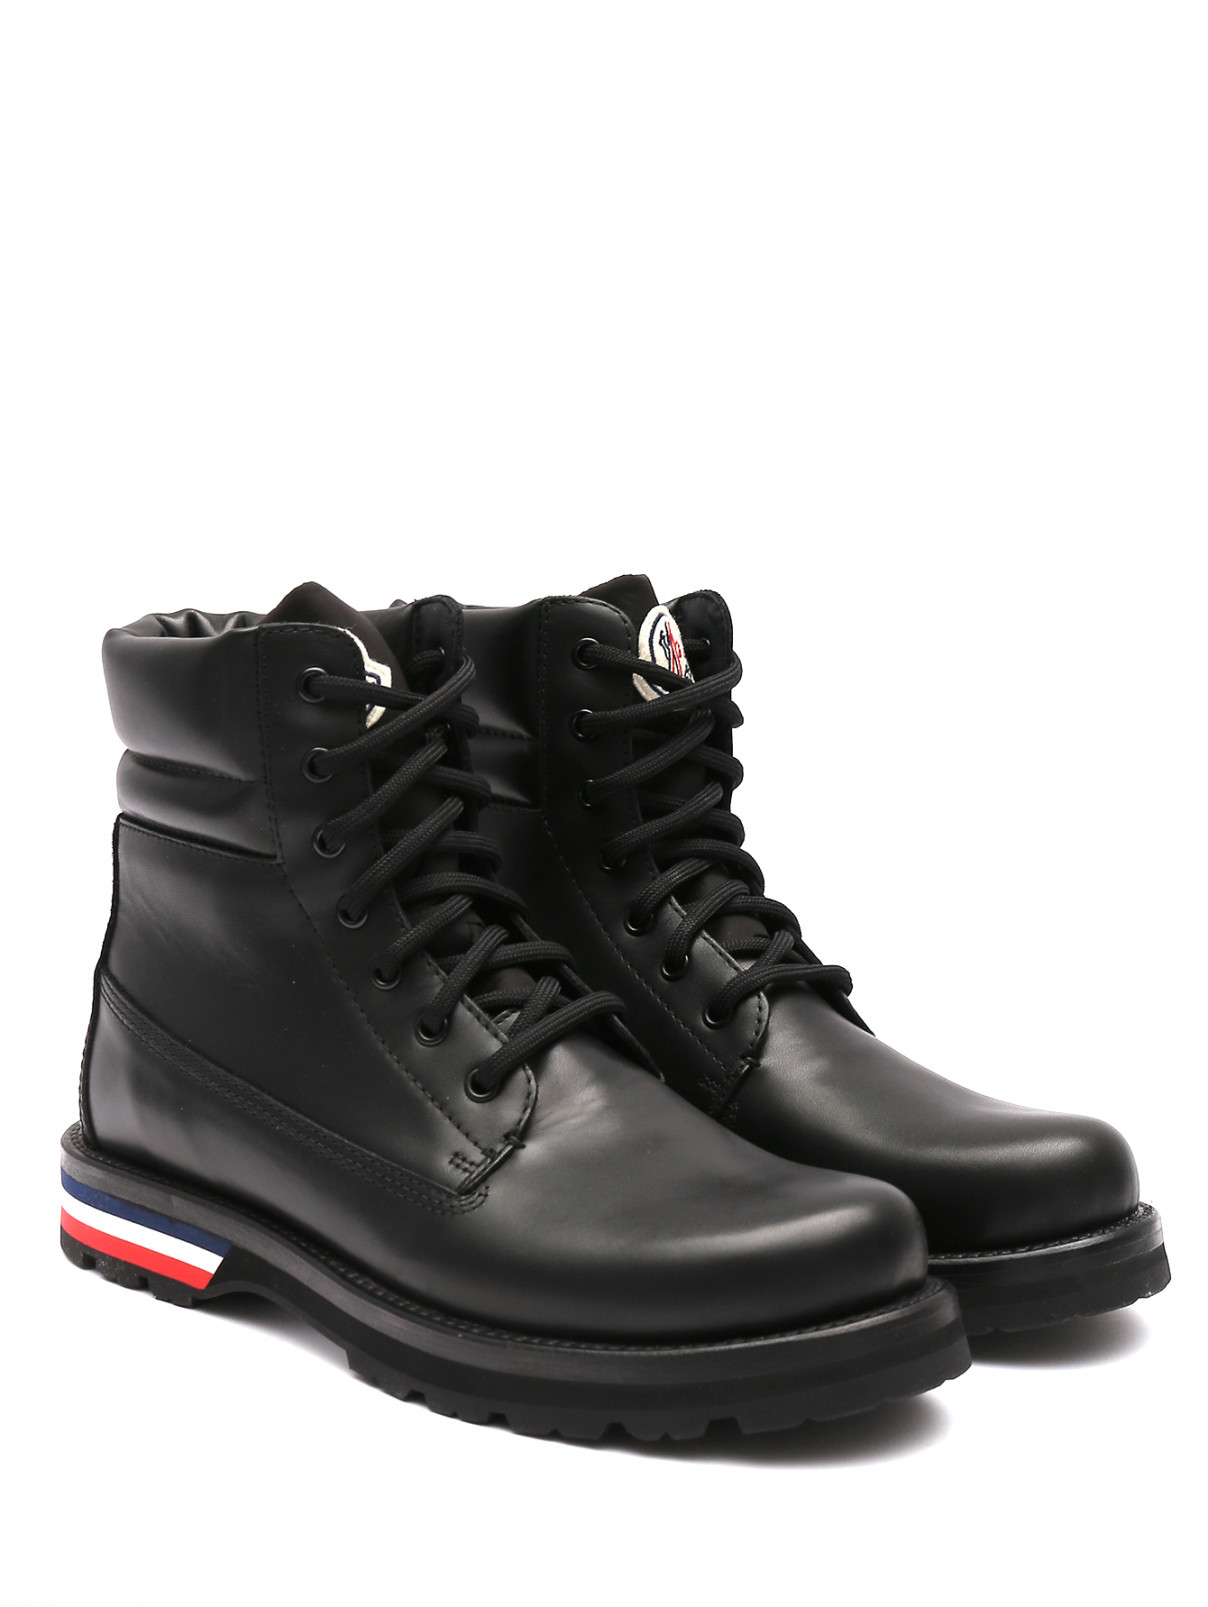 Ботинки из гладкой кожи на шнурках Moncler  –  Общий вид  – Цвет:  Черный